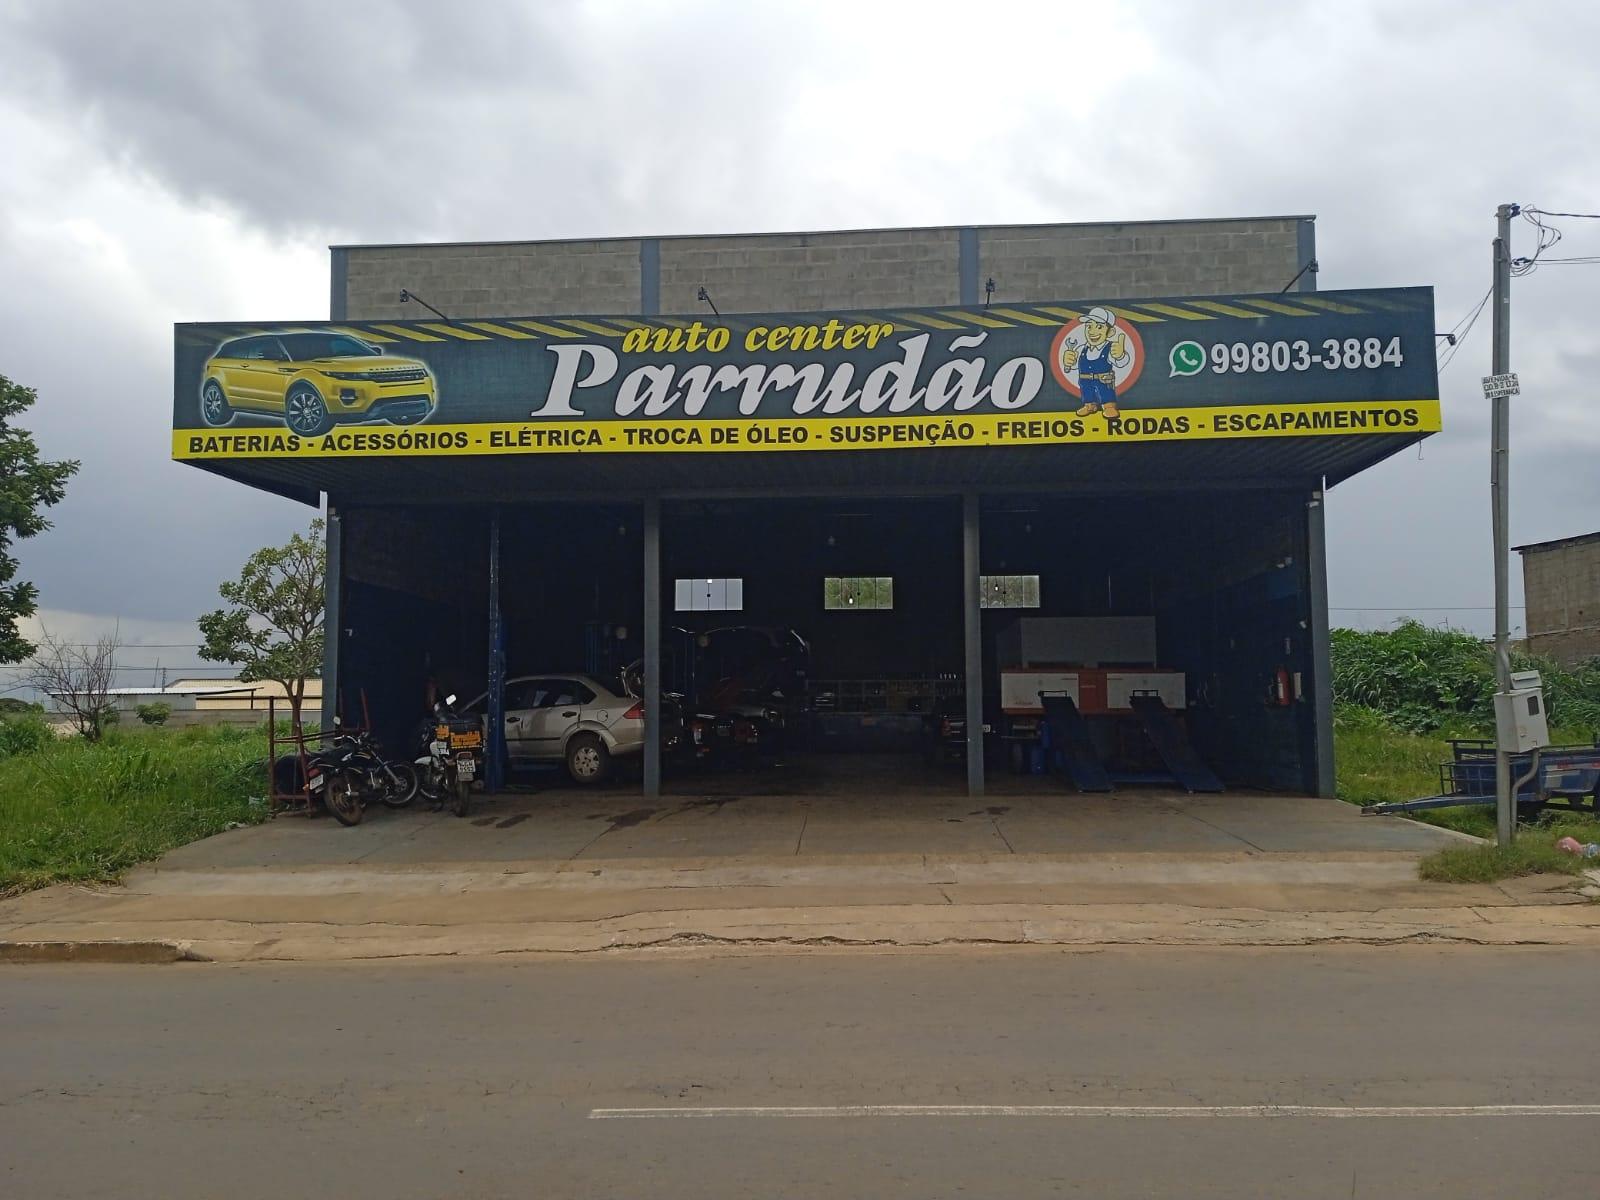 Parrudao Auto Center